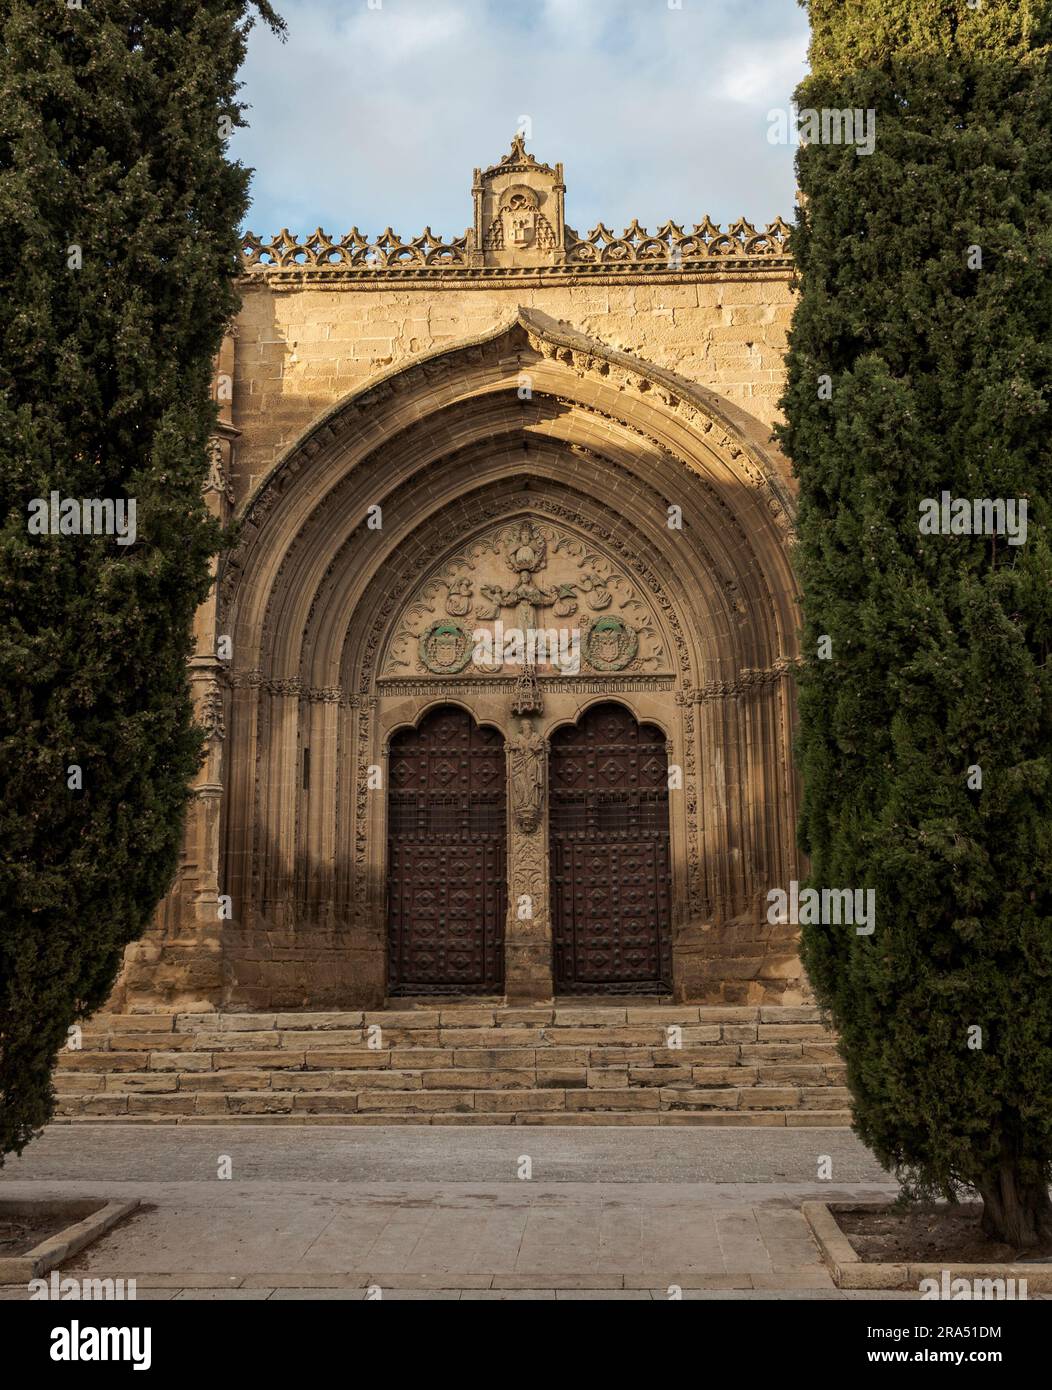 Portale principale della Chiesa di San Pablo, nella città di Ubeda, provincia di Jaen, Spagna. Fu costruito tra il XVII e il XVIII secolo. Foto Stock